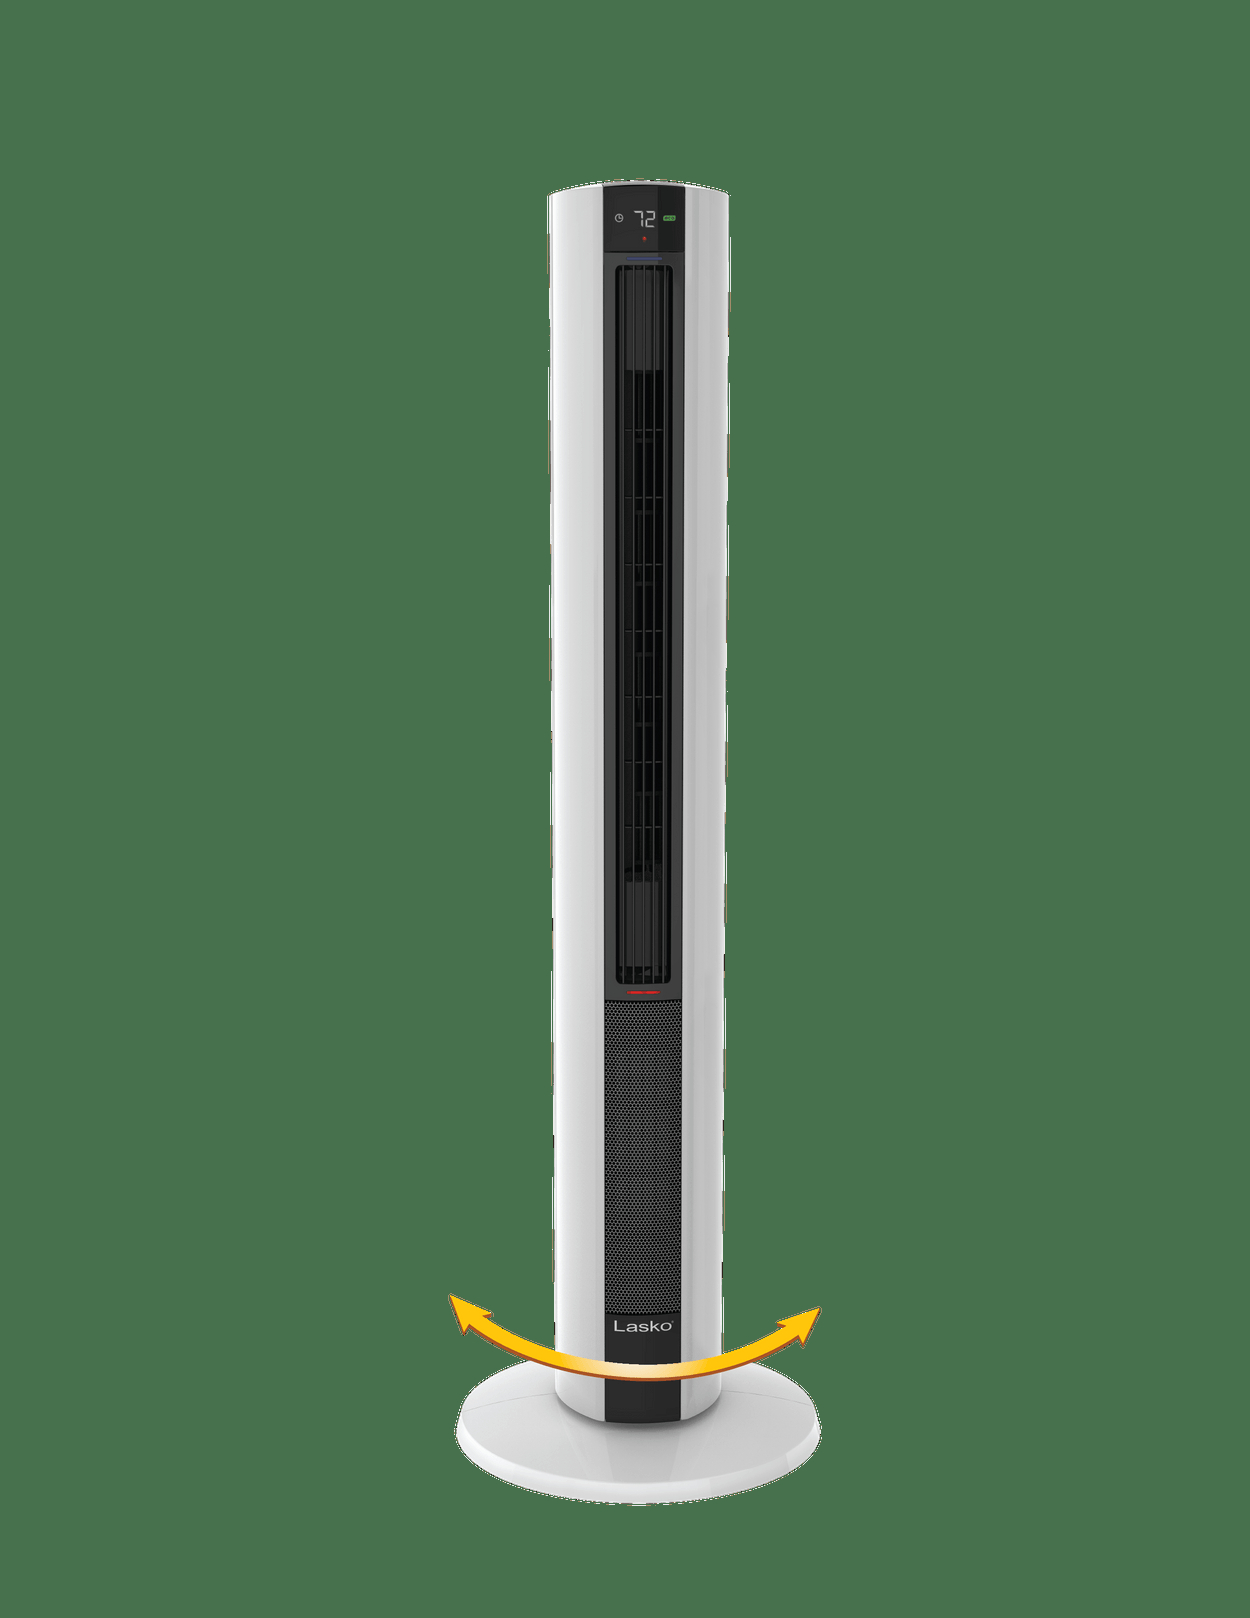 Lasko All Season Tower Fan Heater In One within sizing 1250 X 1618